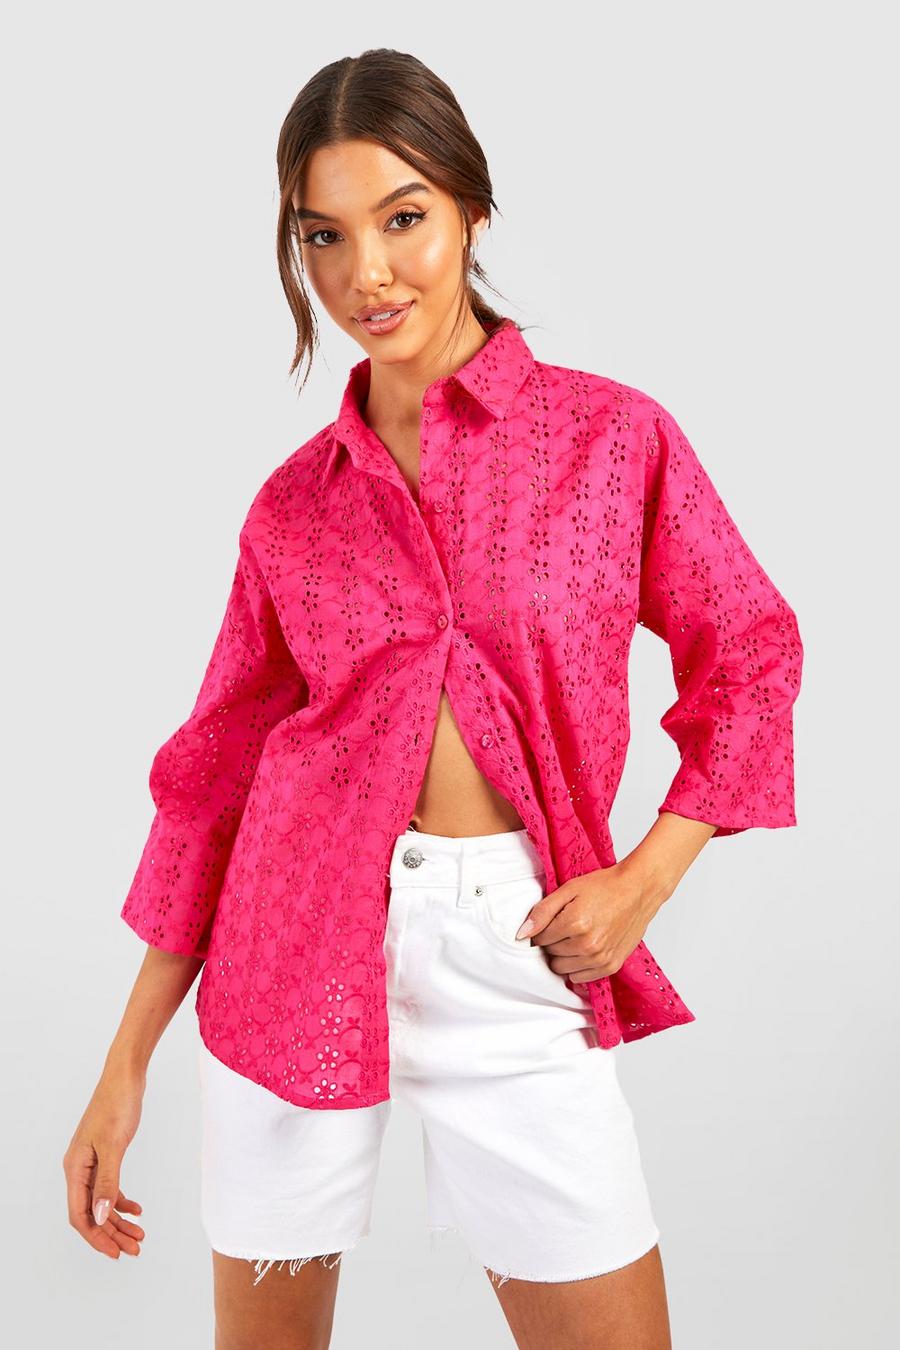 Lochmuster-Hemd mit Knopfleiste, Hot pink